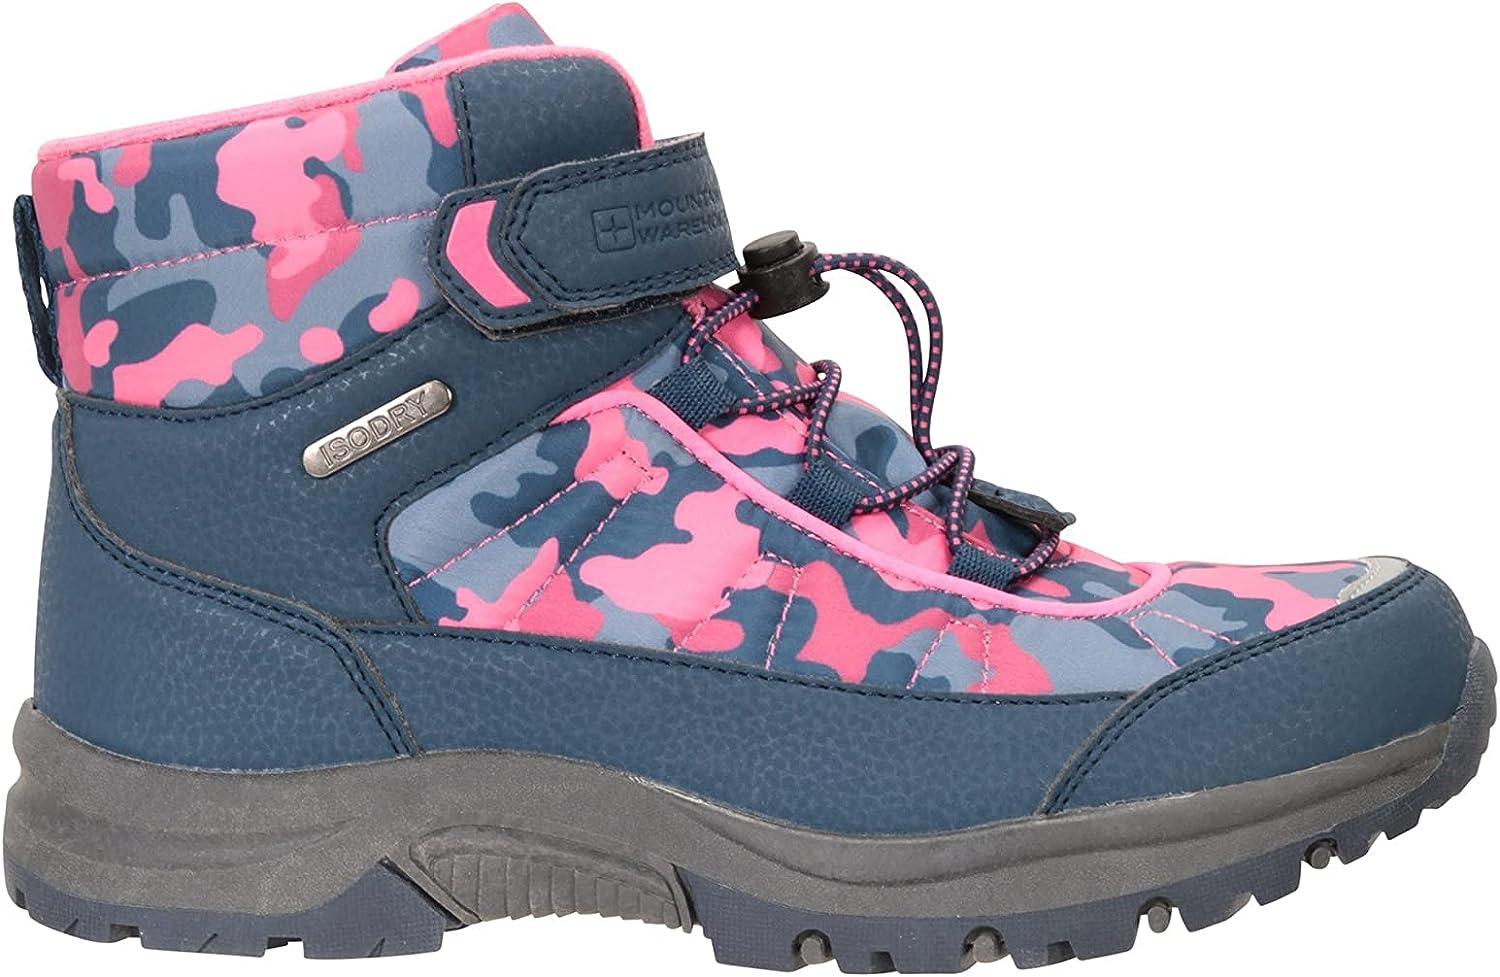 Mountain Warehouse Camo Waterproof Kids Boots - Casual Walking